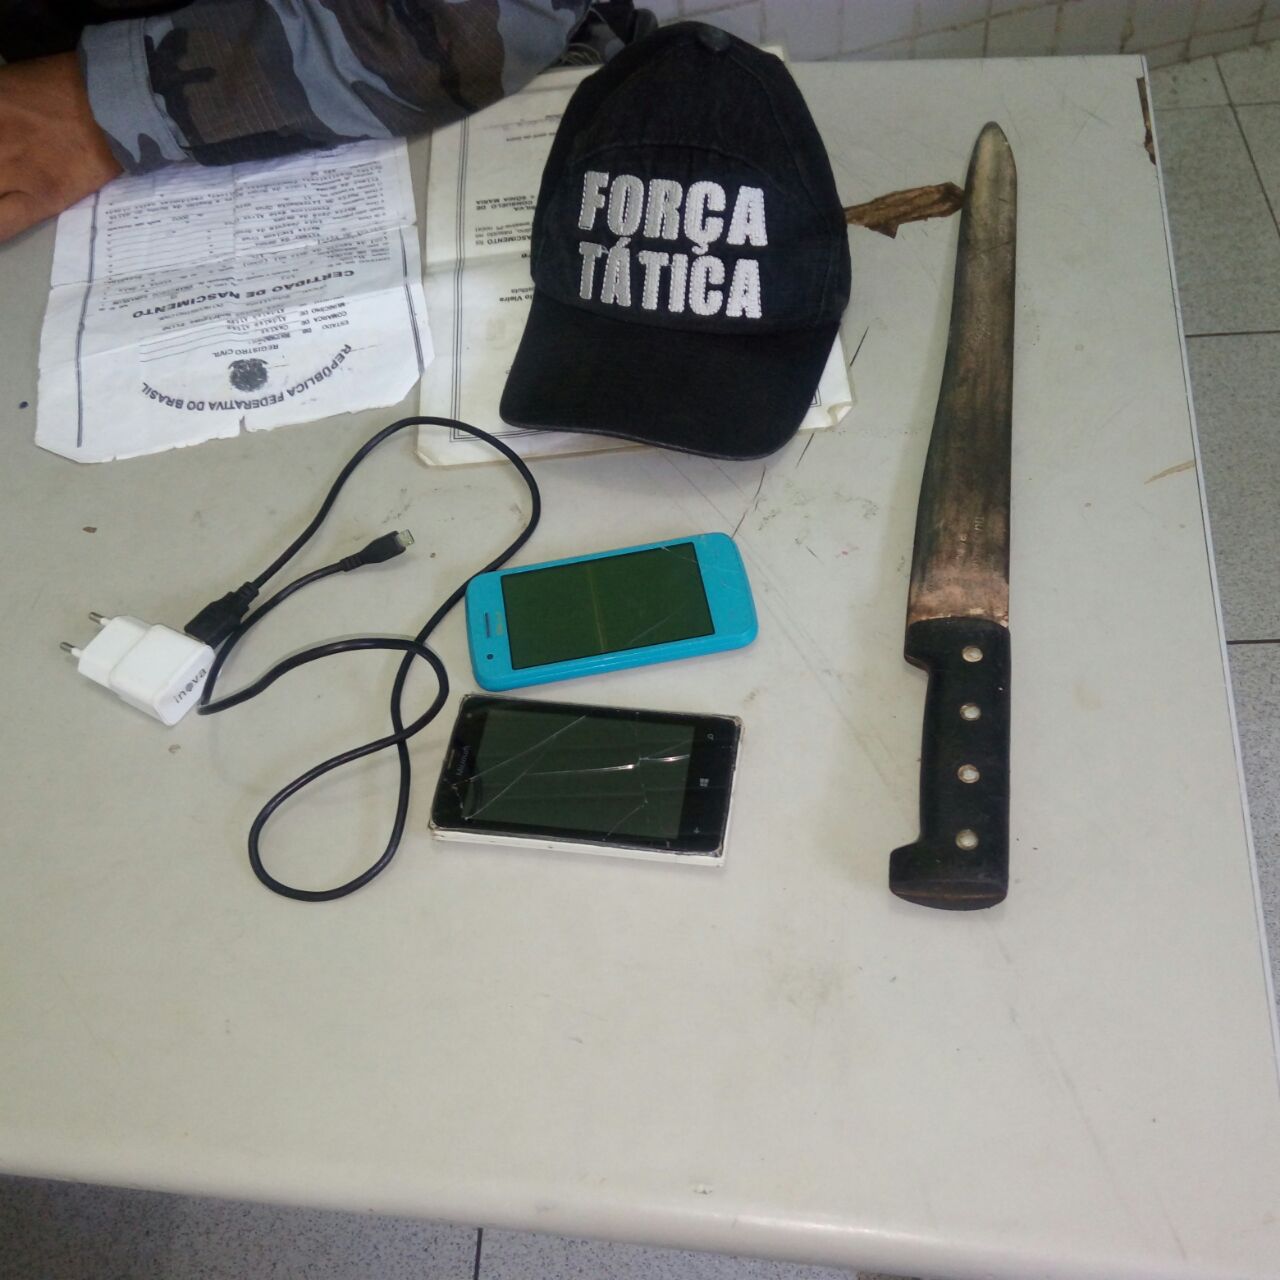 A Polícia Militar do 5º Batalhão apreendeu dois celulares, um facão, um carregador e um colar.